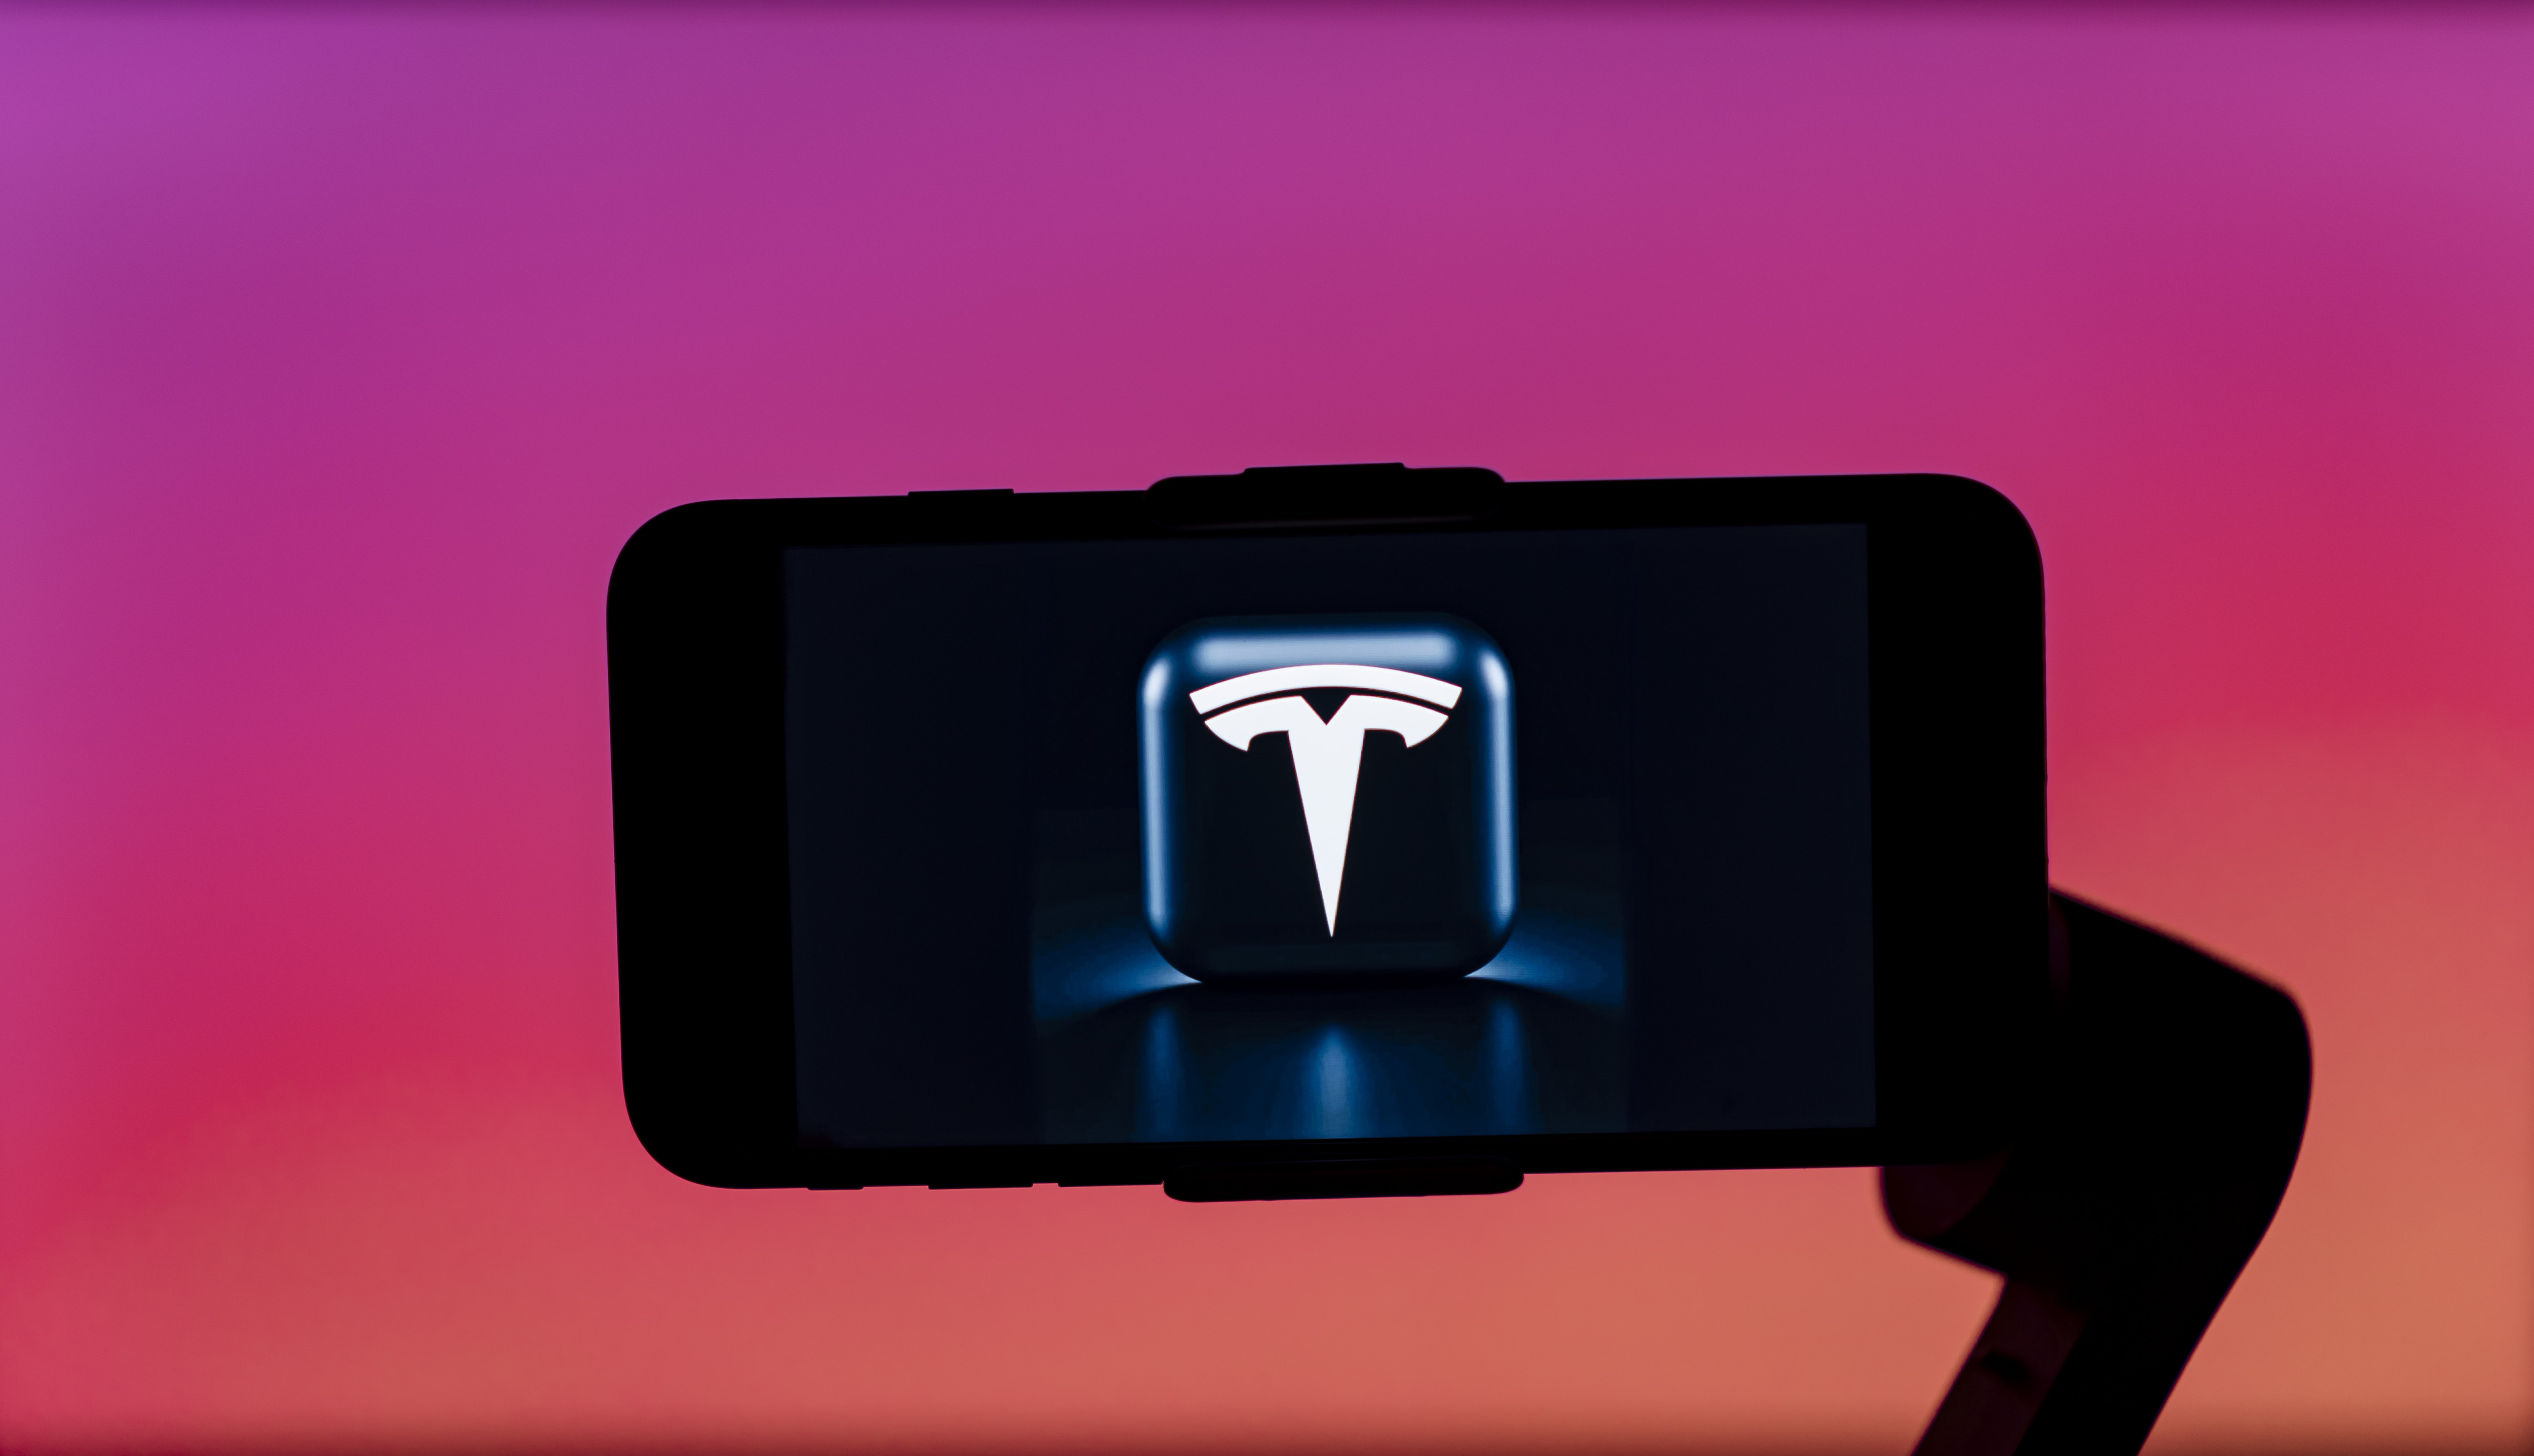 Tesla logo on a phone